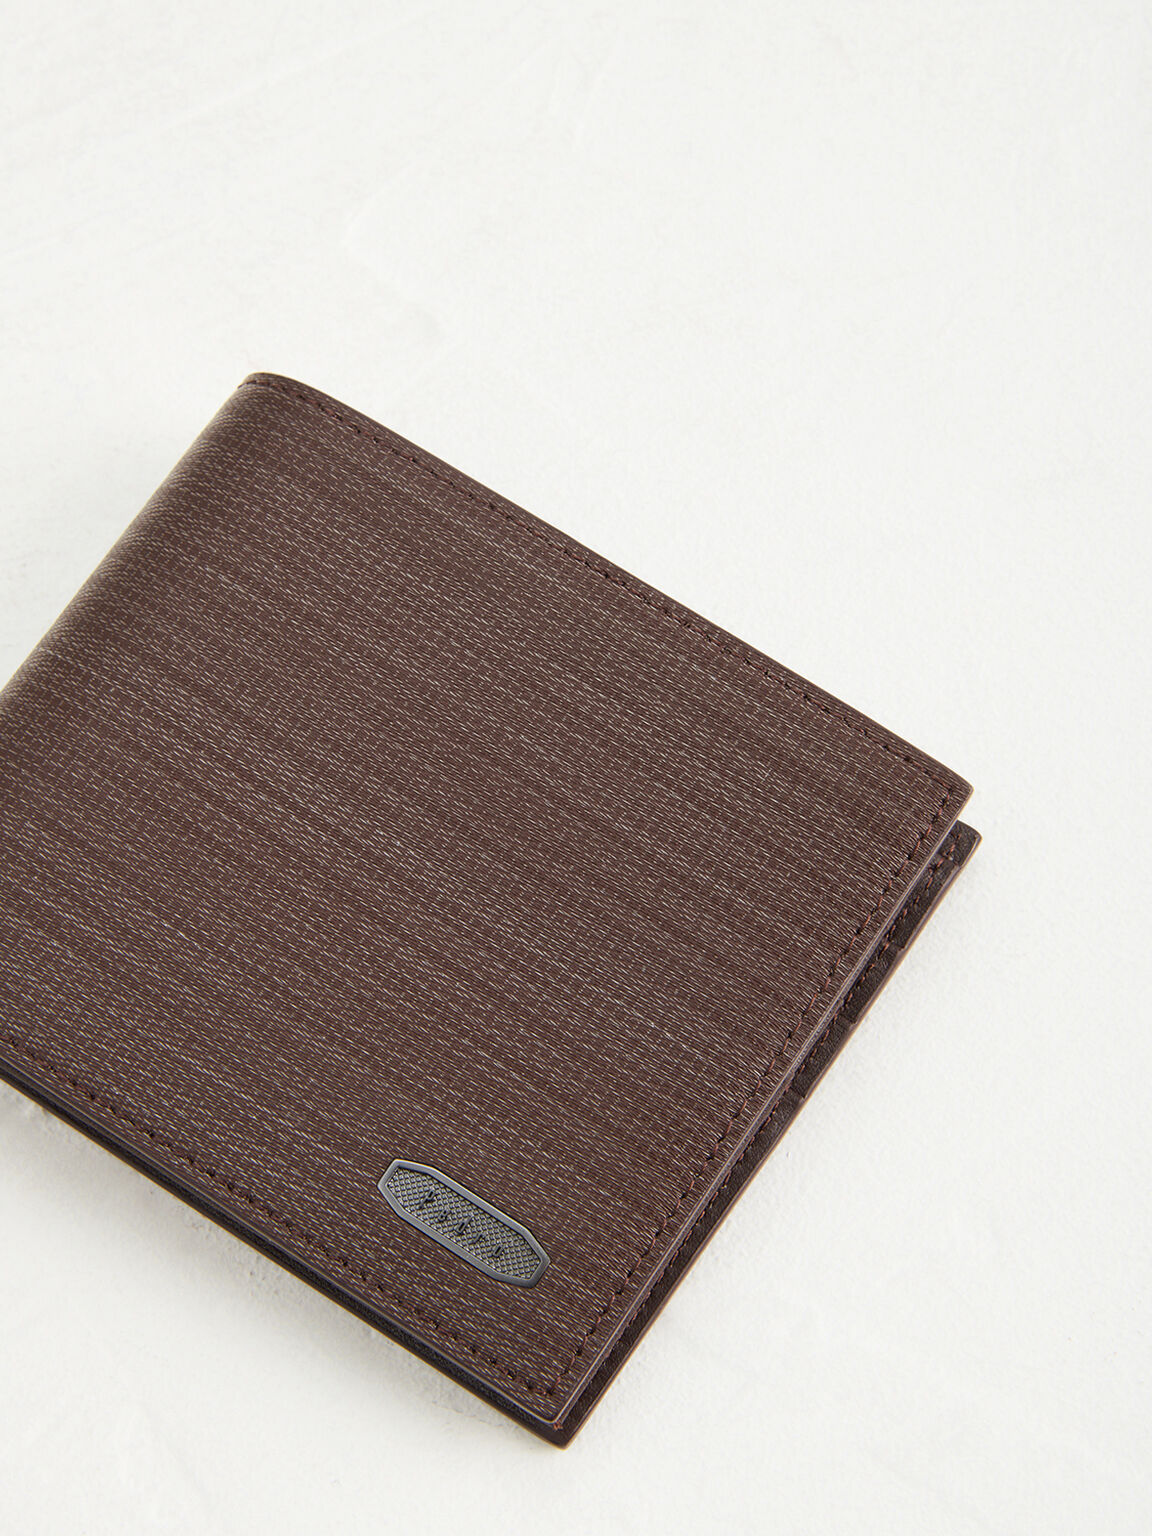 Embossed Leather Bi-Fold Wallet, Dark Brown